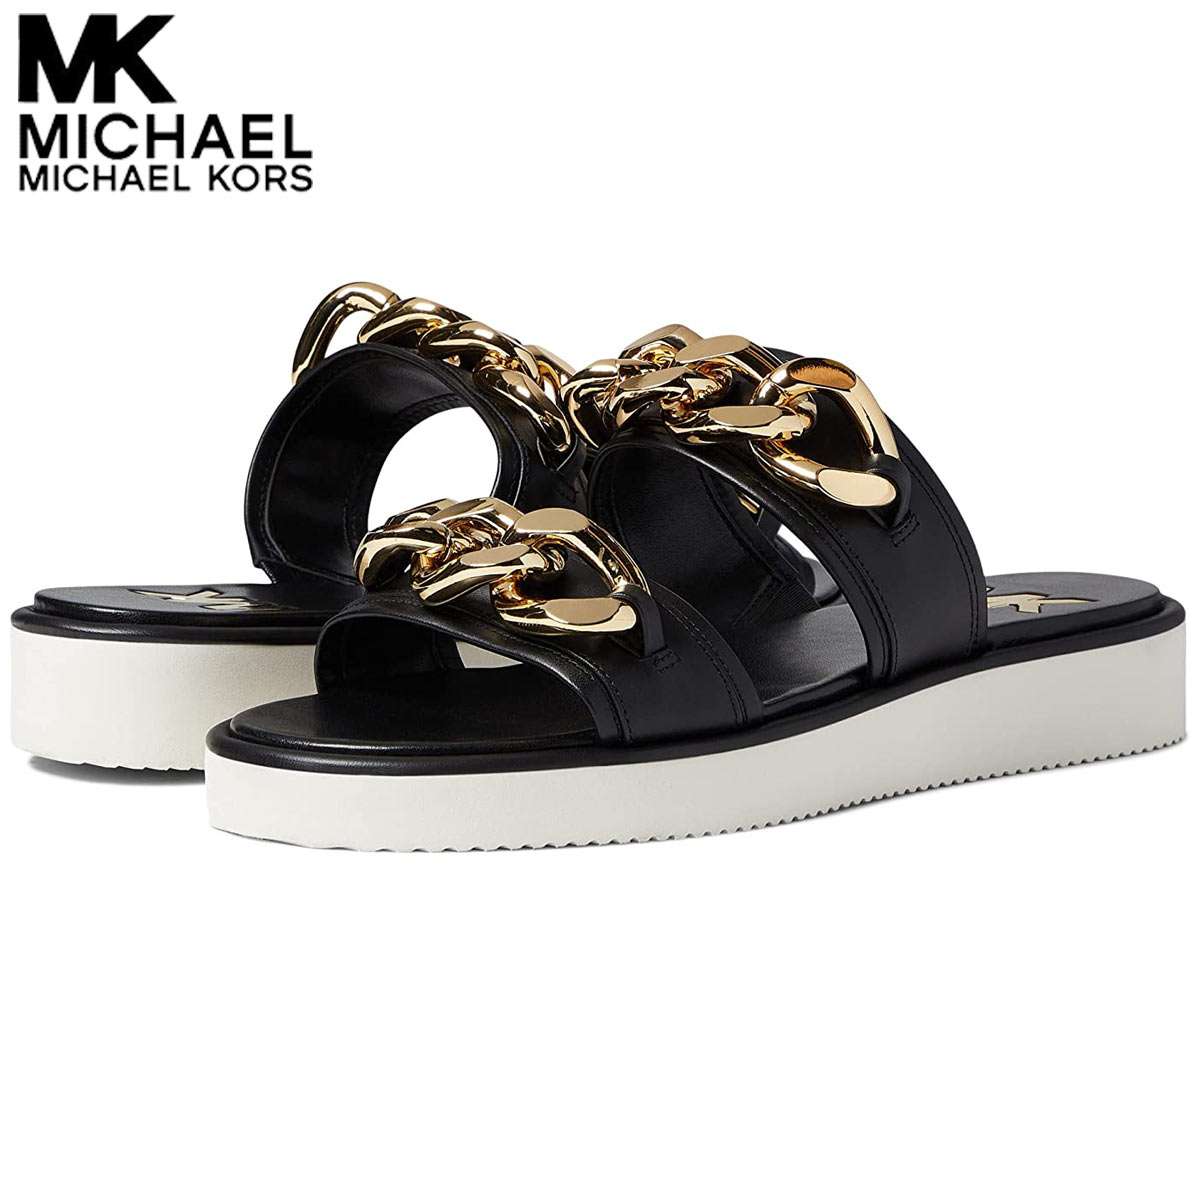 マイケルコース レディース サンダル 厚底 スポーツ 歩きやすい ブランド 靴 大きいサイズあり Michael Kors